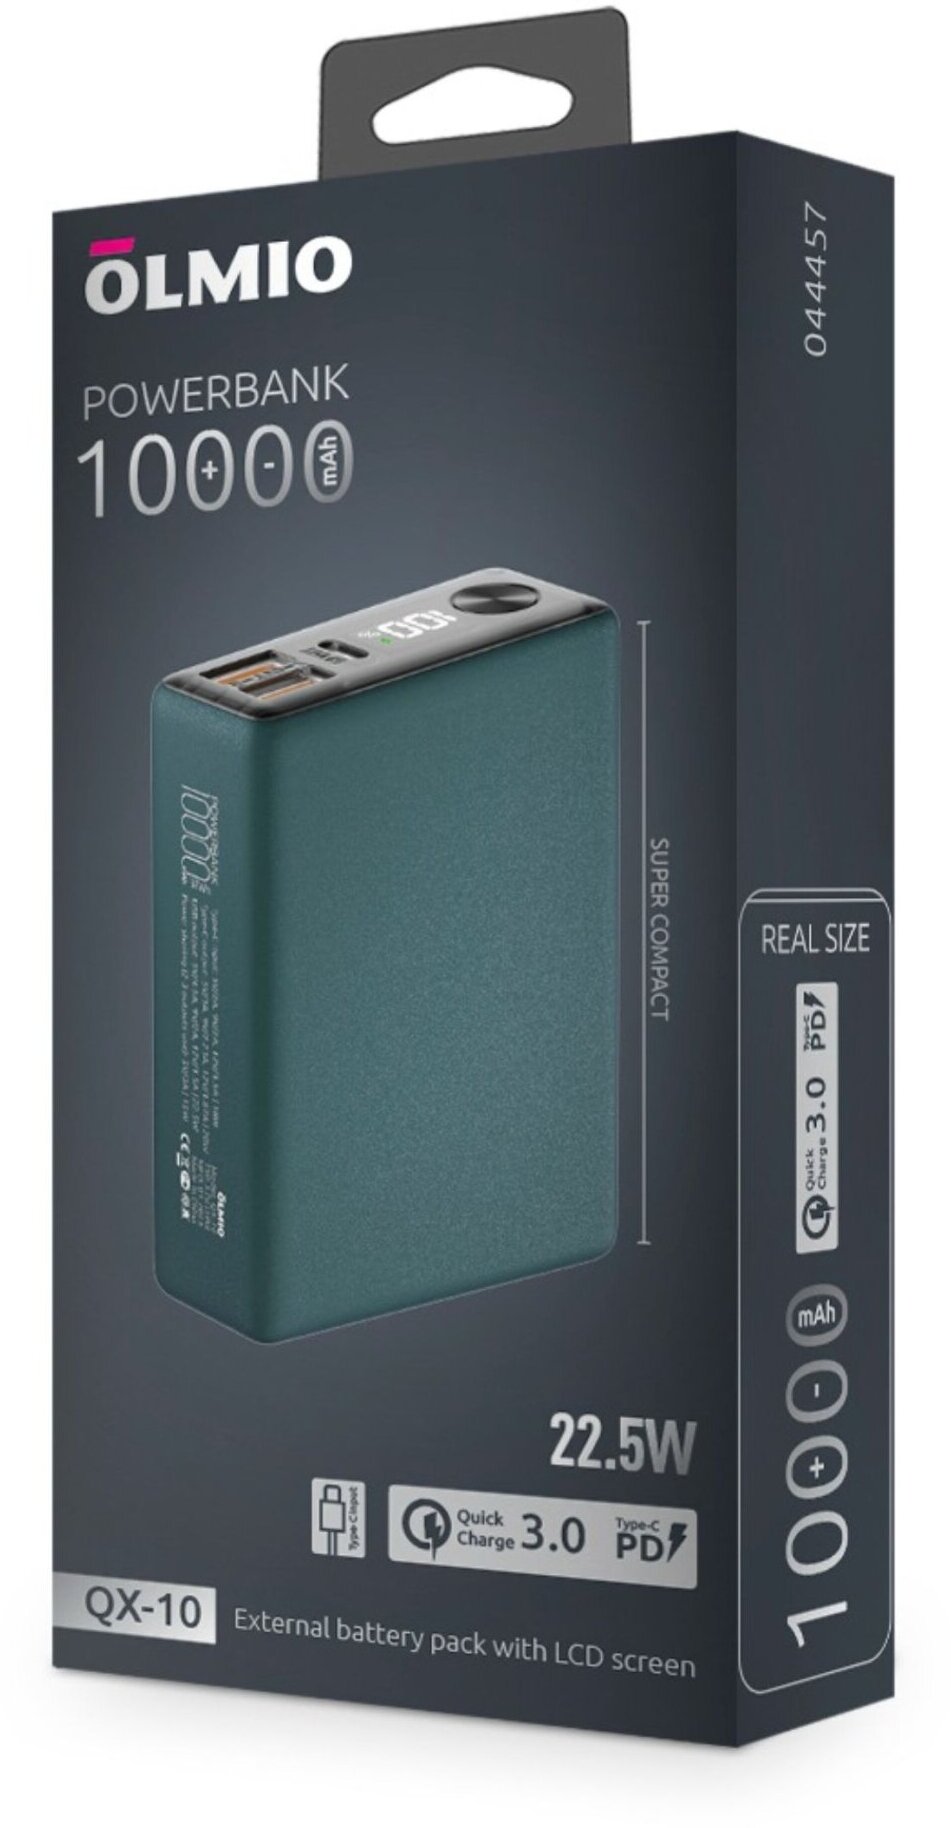 Портативное зарядное устройство Olmio QX-10 10000mAh, 22.5W PD/QC 3.0, темно-зеленый